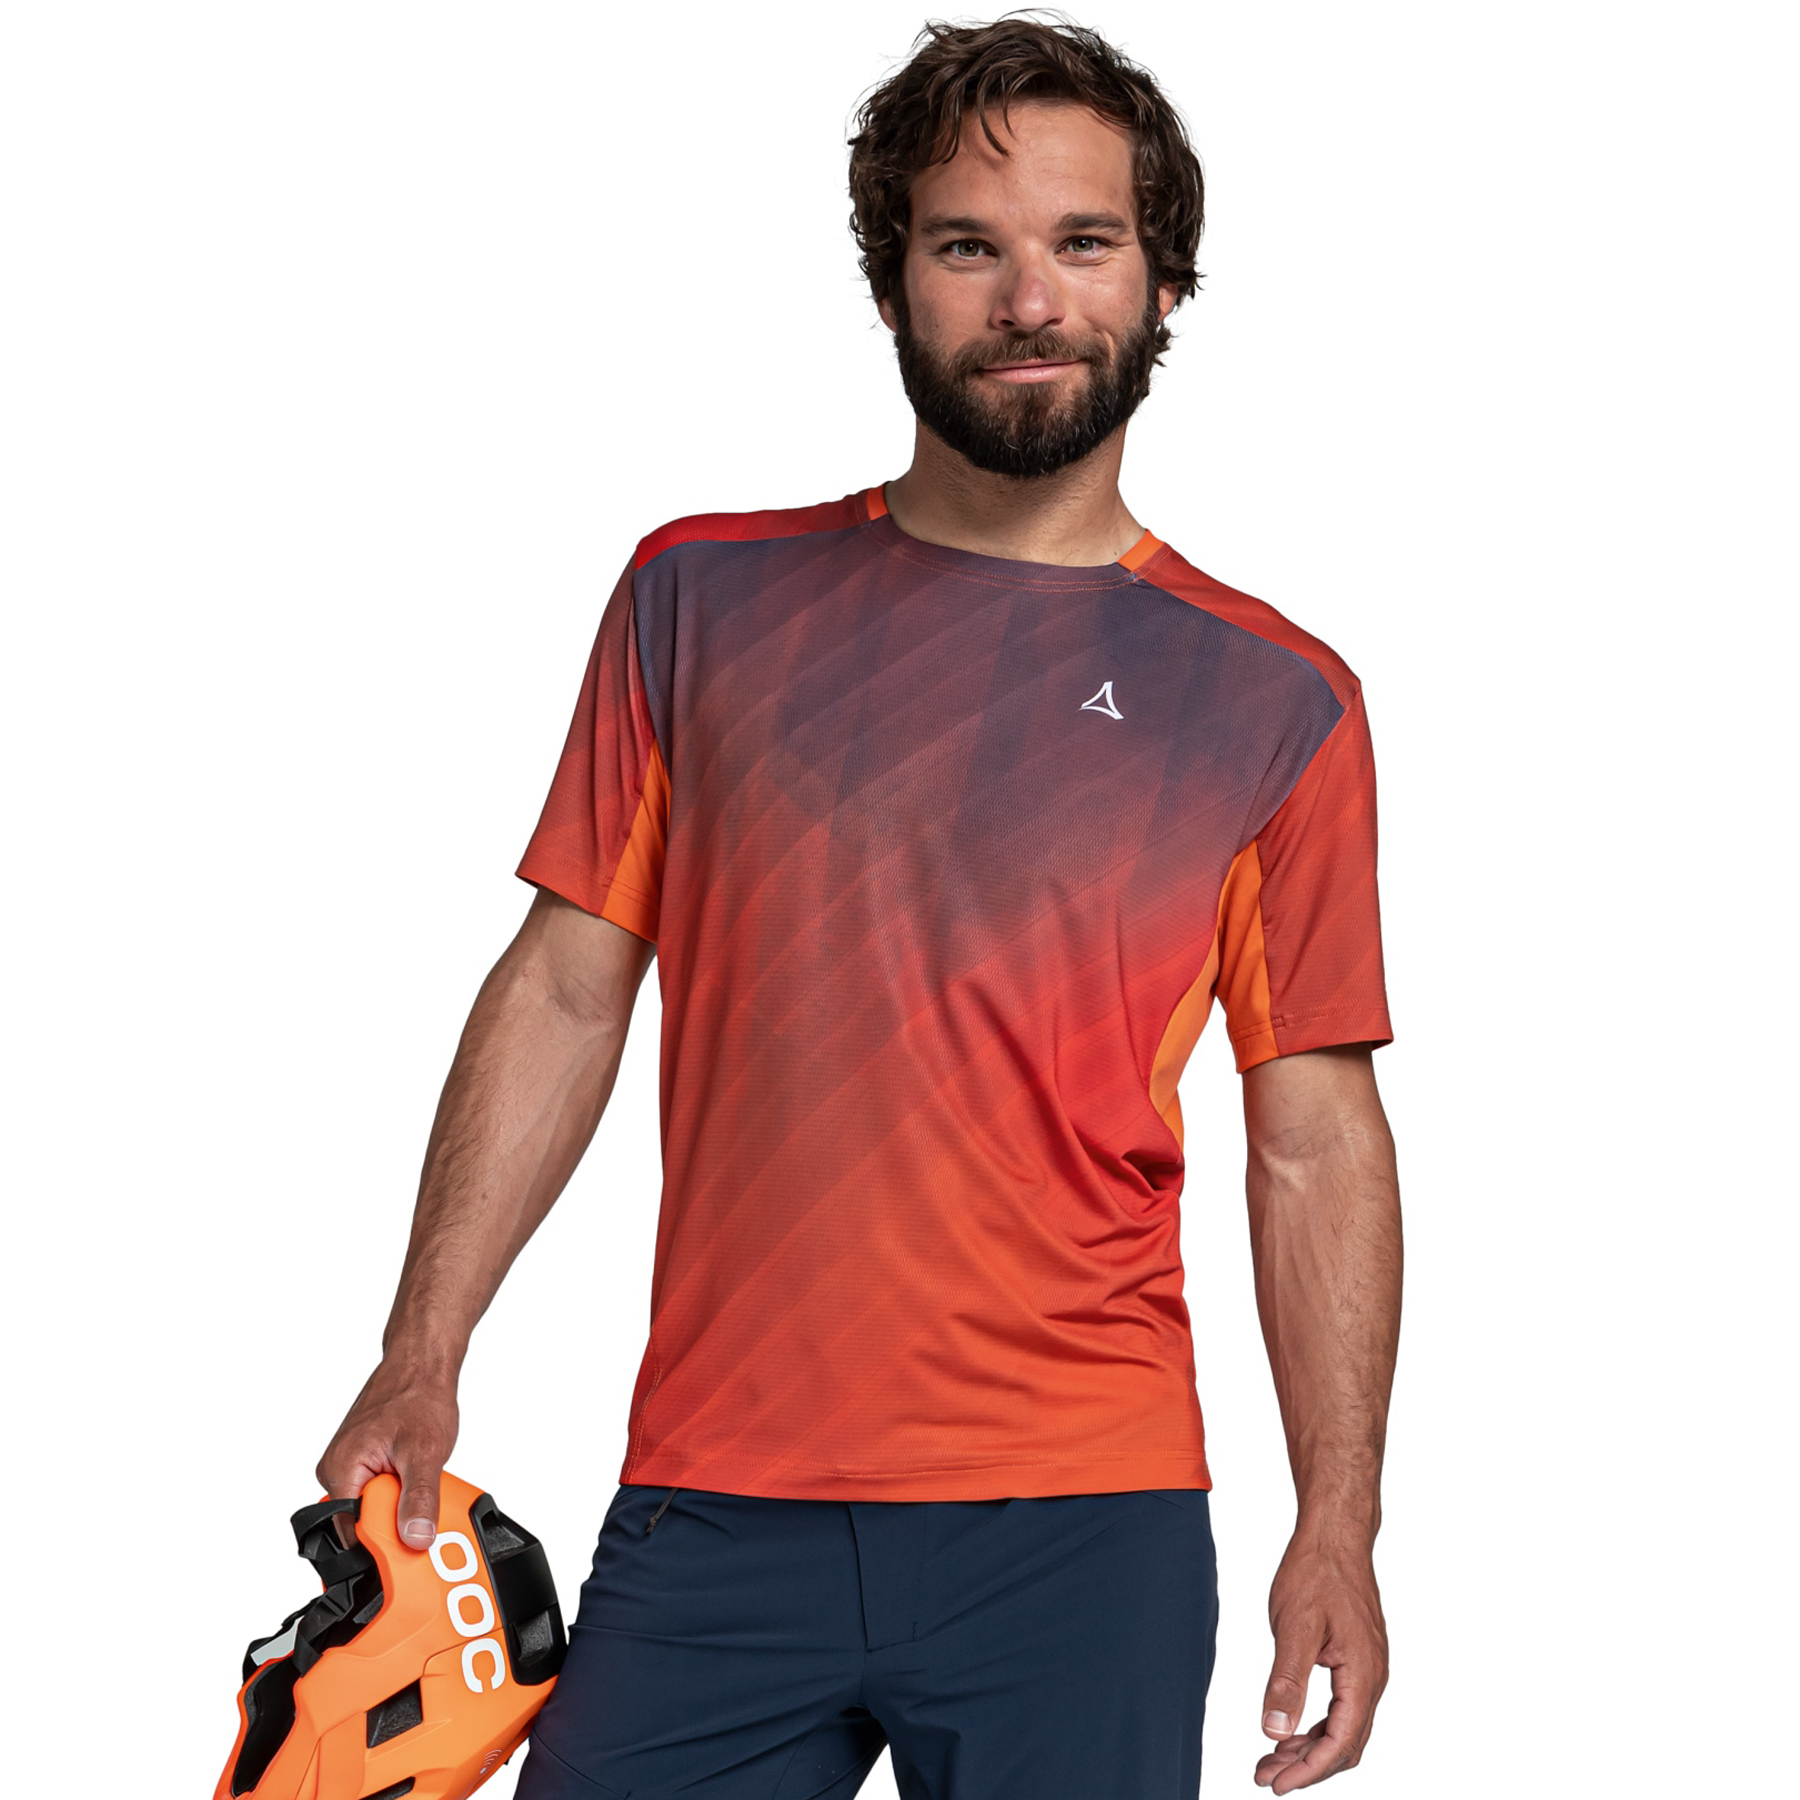 Produktbild von Schöffel Valbella Shirt Herren - rot orange 5360